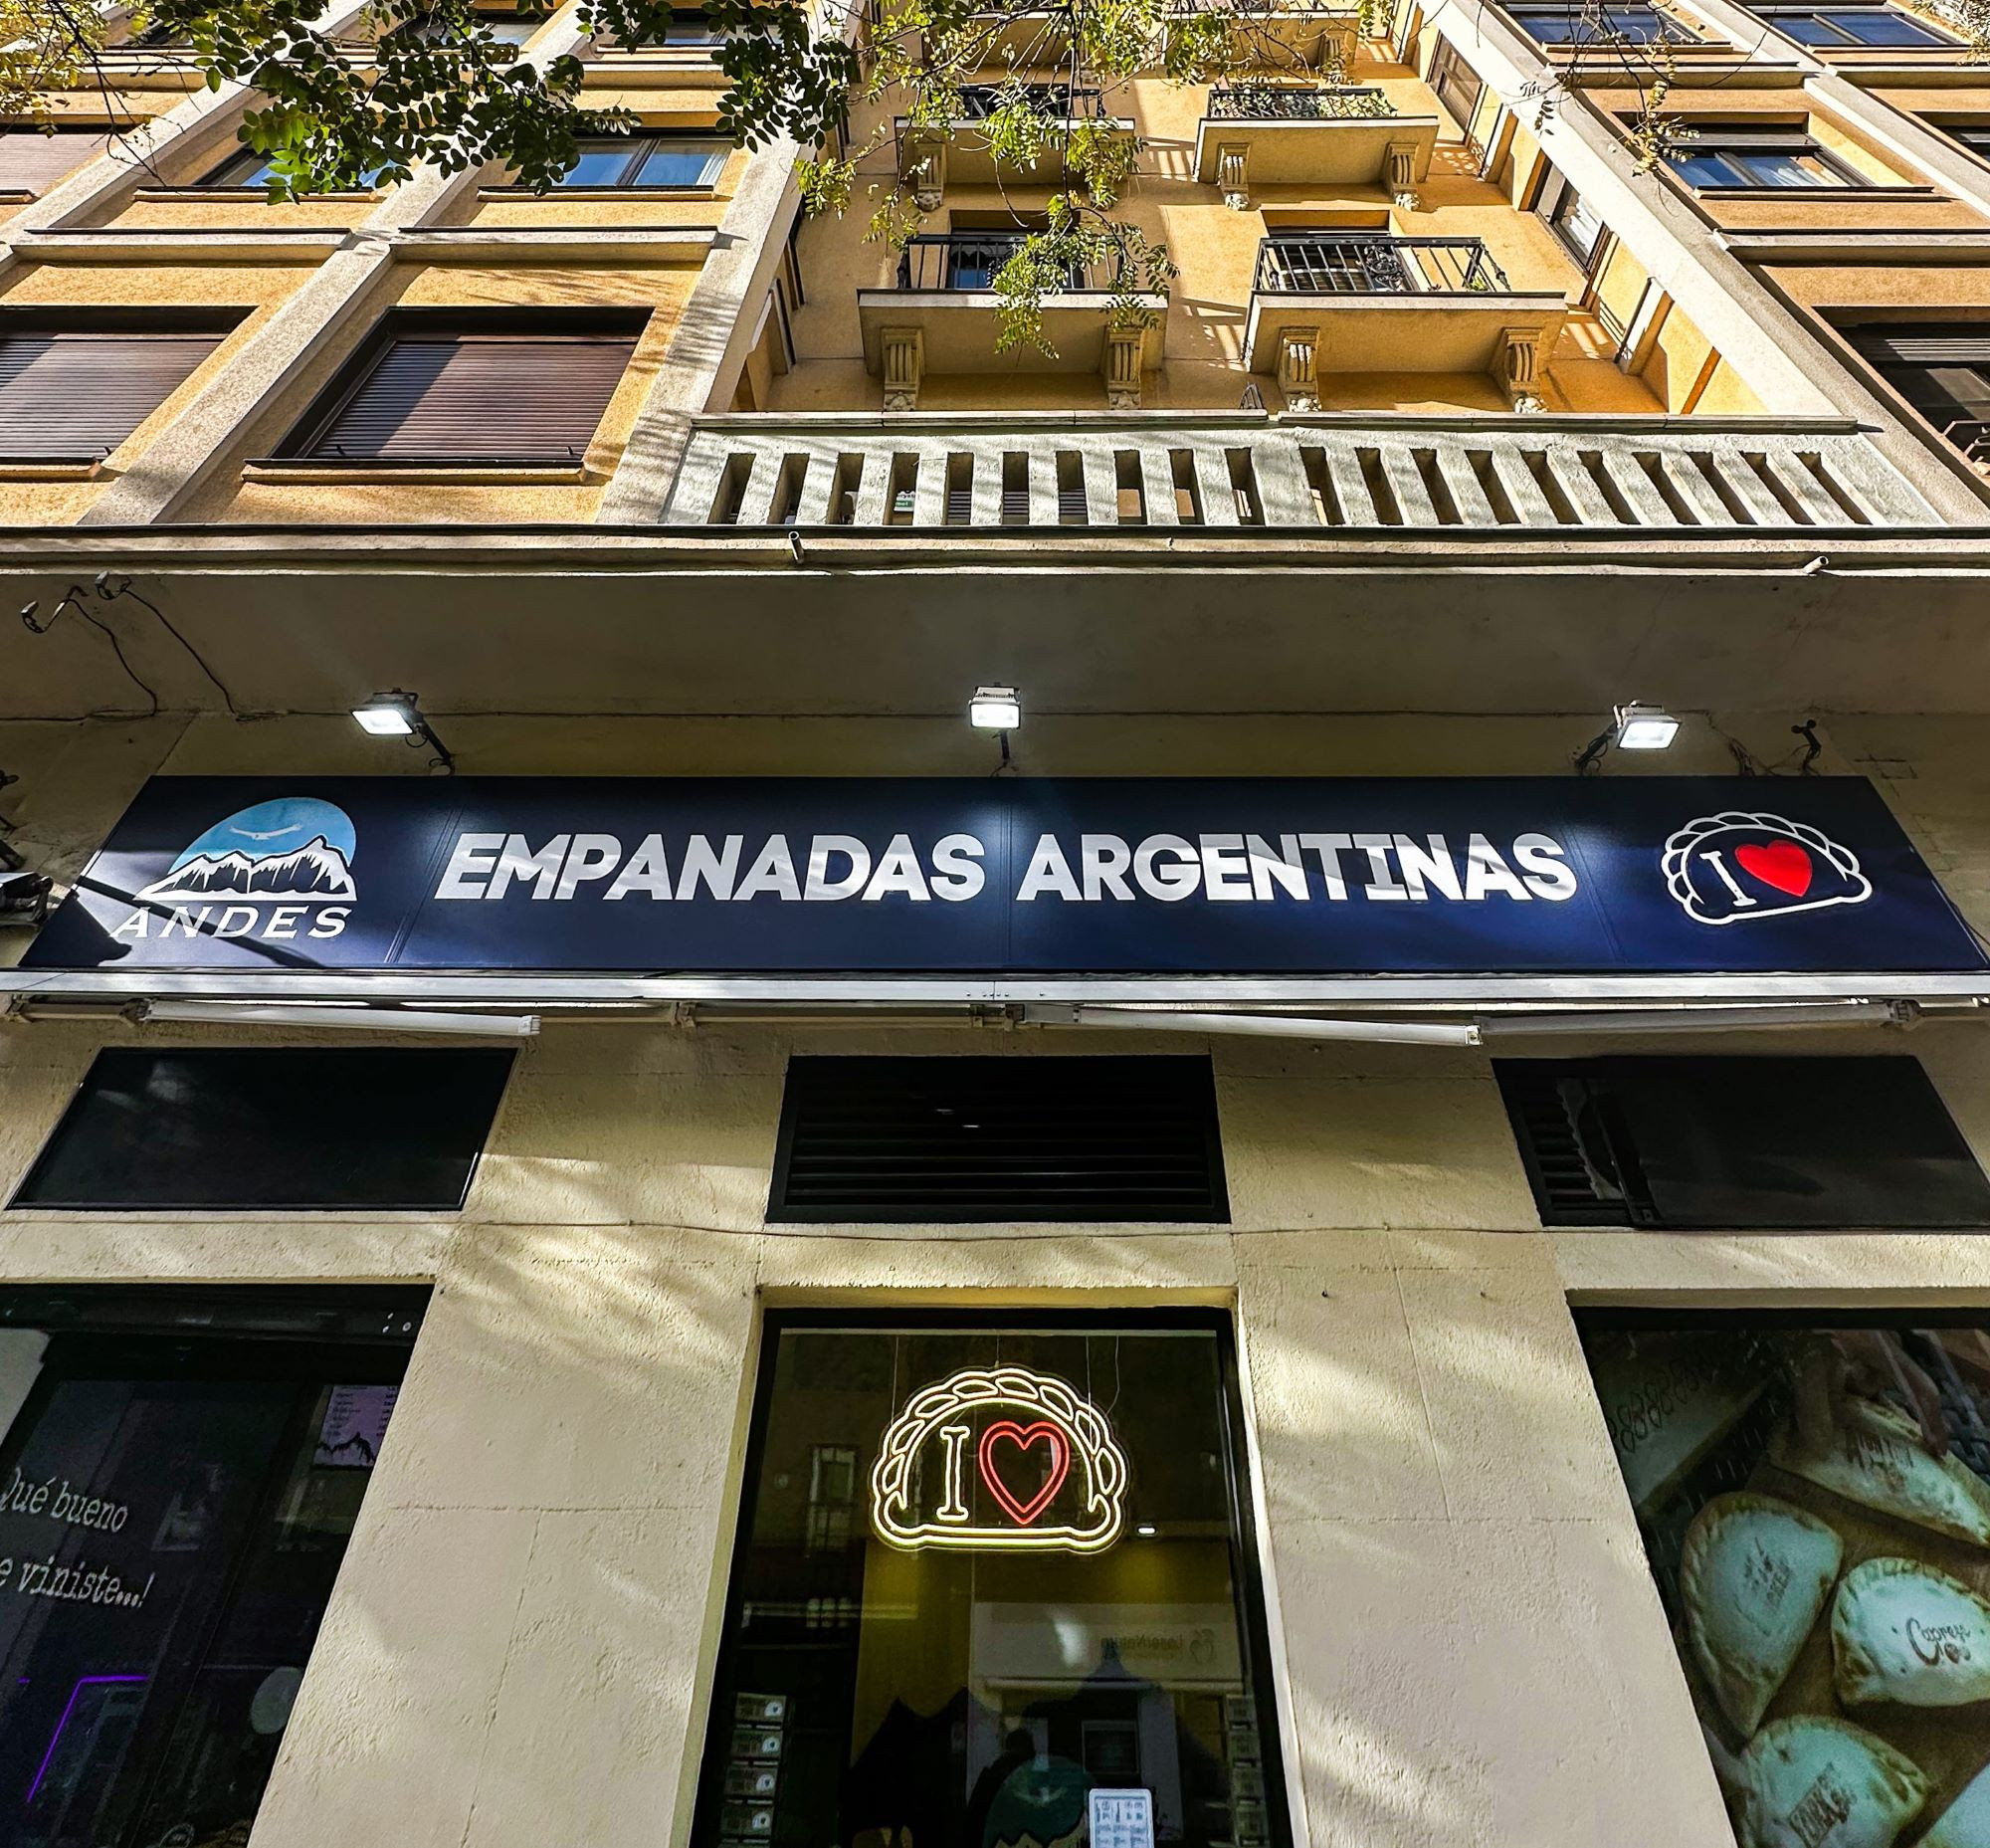 Andes Empanadas Argentinas inaugura local en la calle Alcalá de Madrid